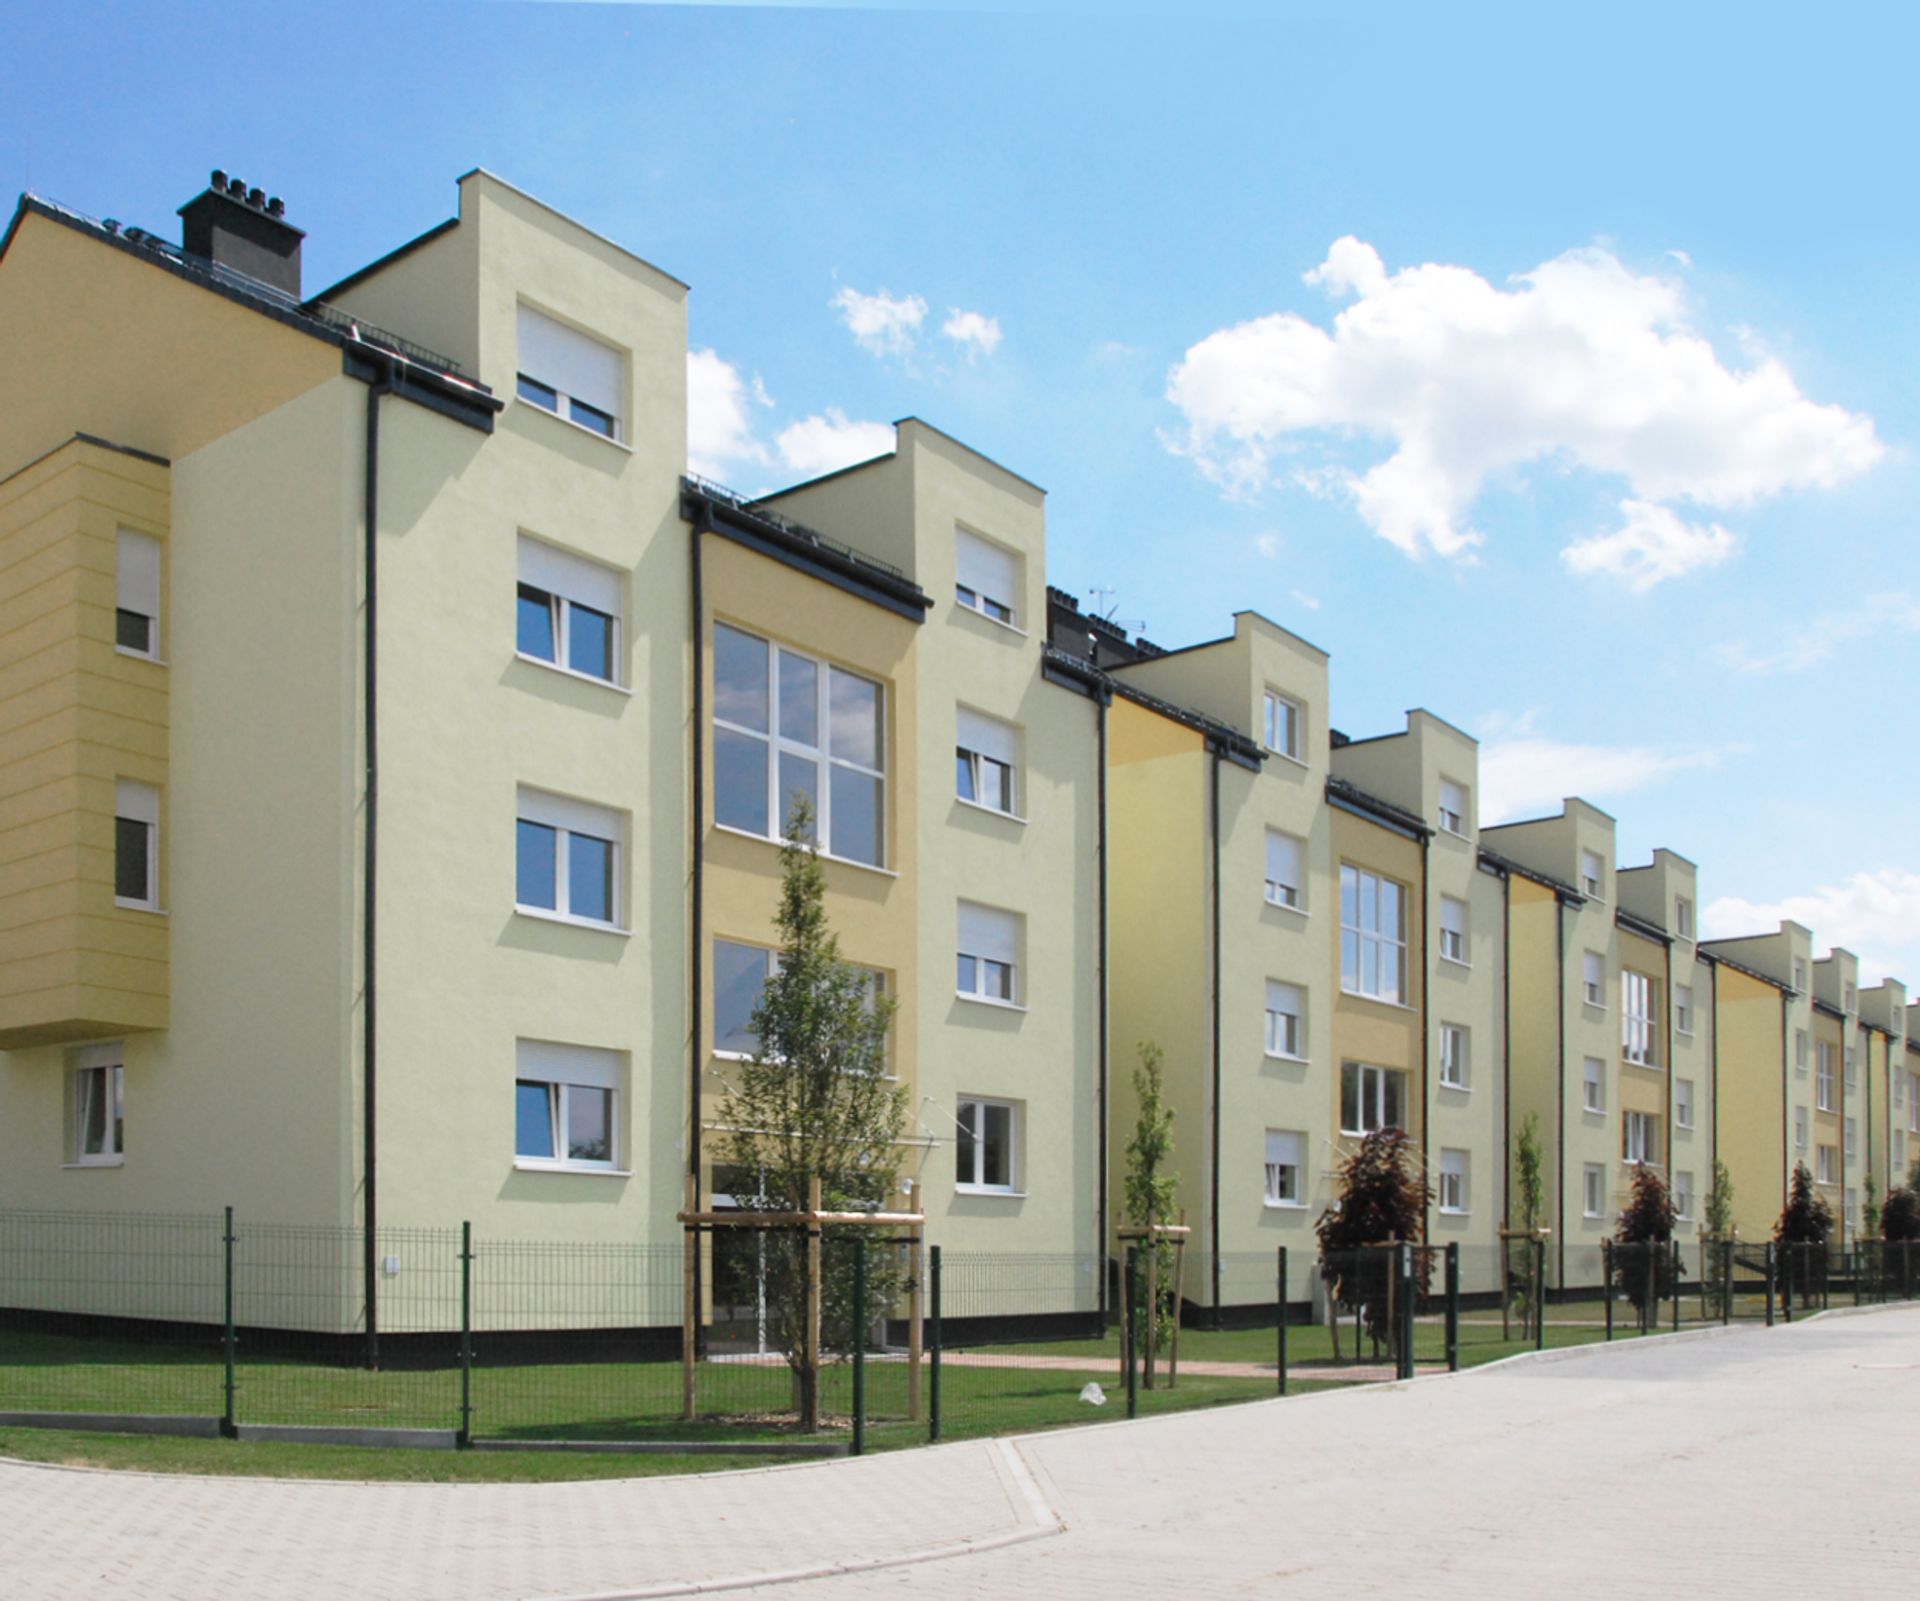  Wrzesień 2015: Sytuacja na wrocławskim rynku mieszkaniowym wciąż bardzo dobra